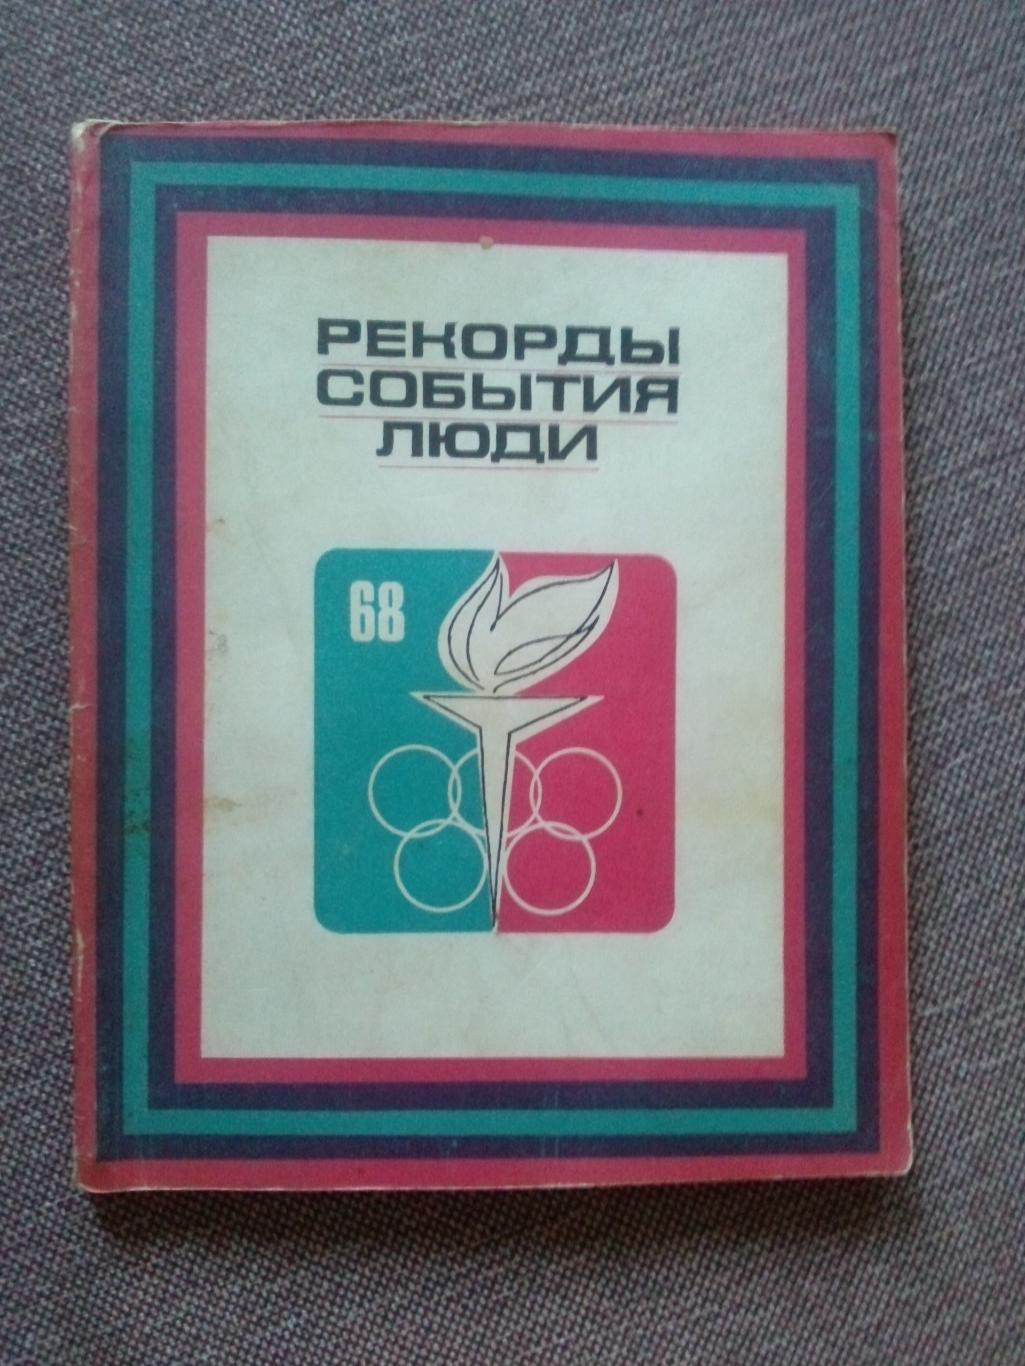 Год спортивный 1968 : Рекорды , события , людиФиС1969 г. (Спорт Олимпиада)